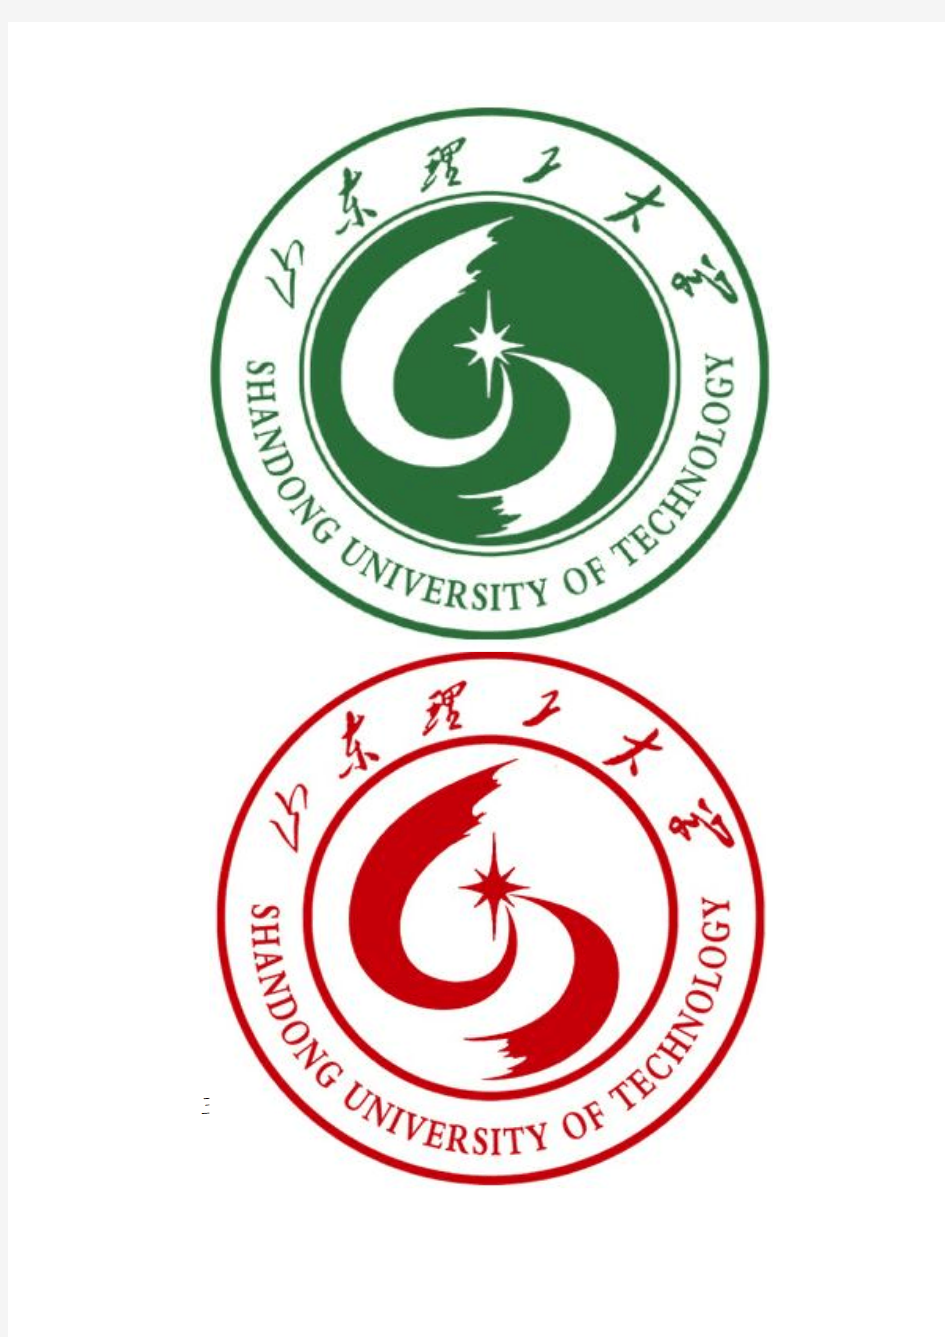 山东理工大学校徽、校名和校训